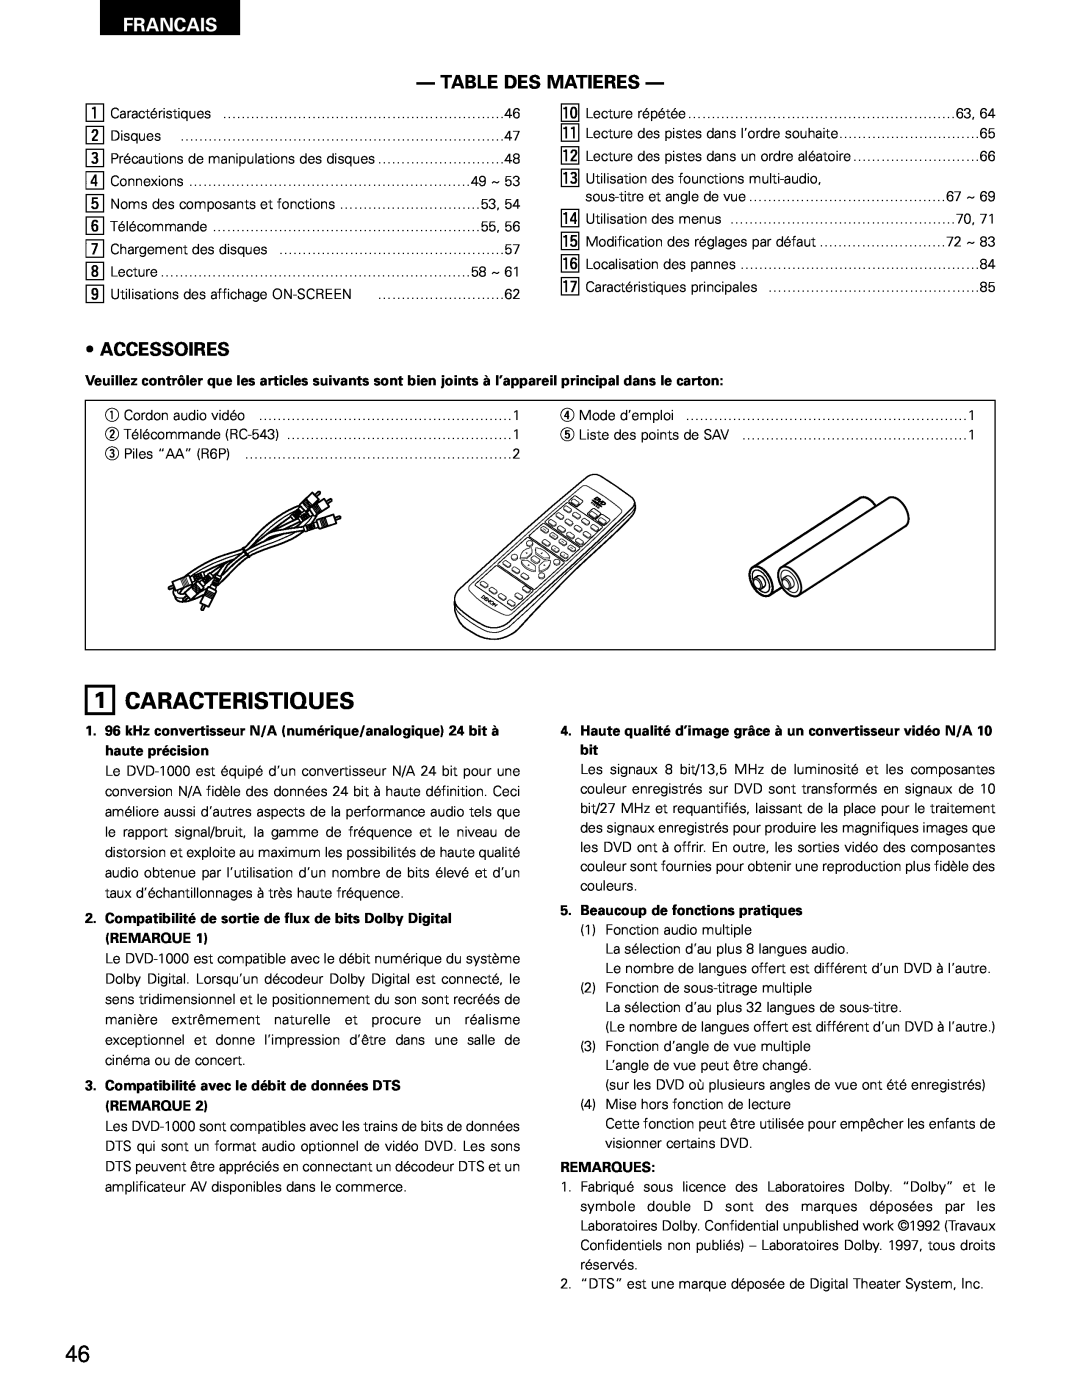 Denon DVD-1000 Caracteristiques, Francais, Table Des Matieres, Accessoires, Beaucoup de fonctions pratiques, Remarques 